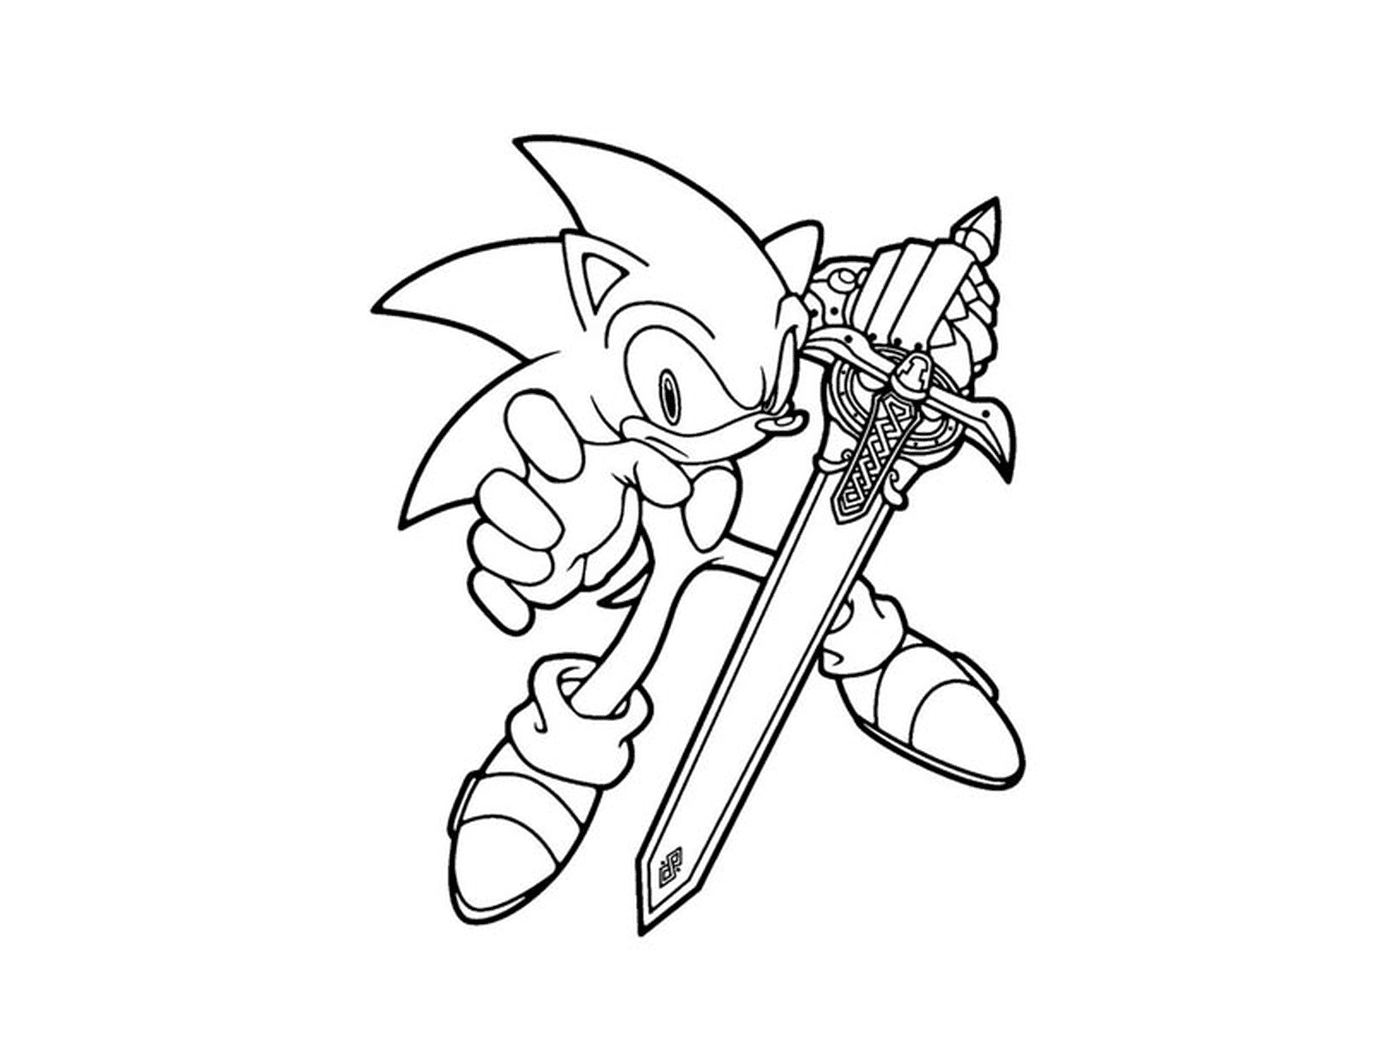  Sonic sosteniendo una espada 